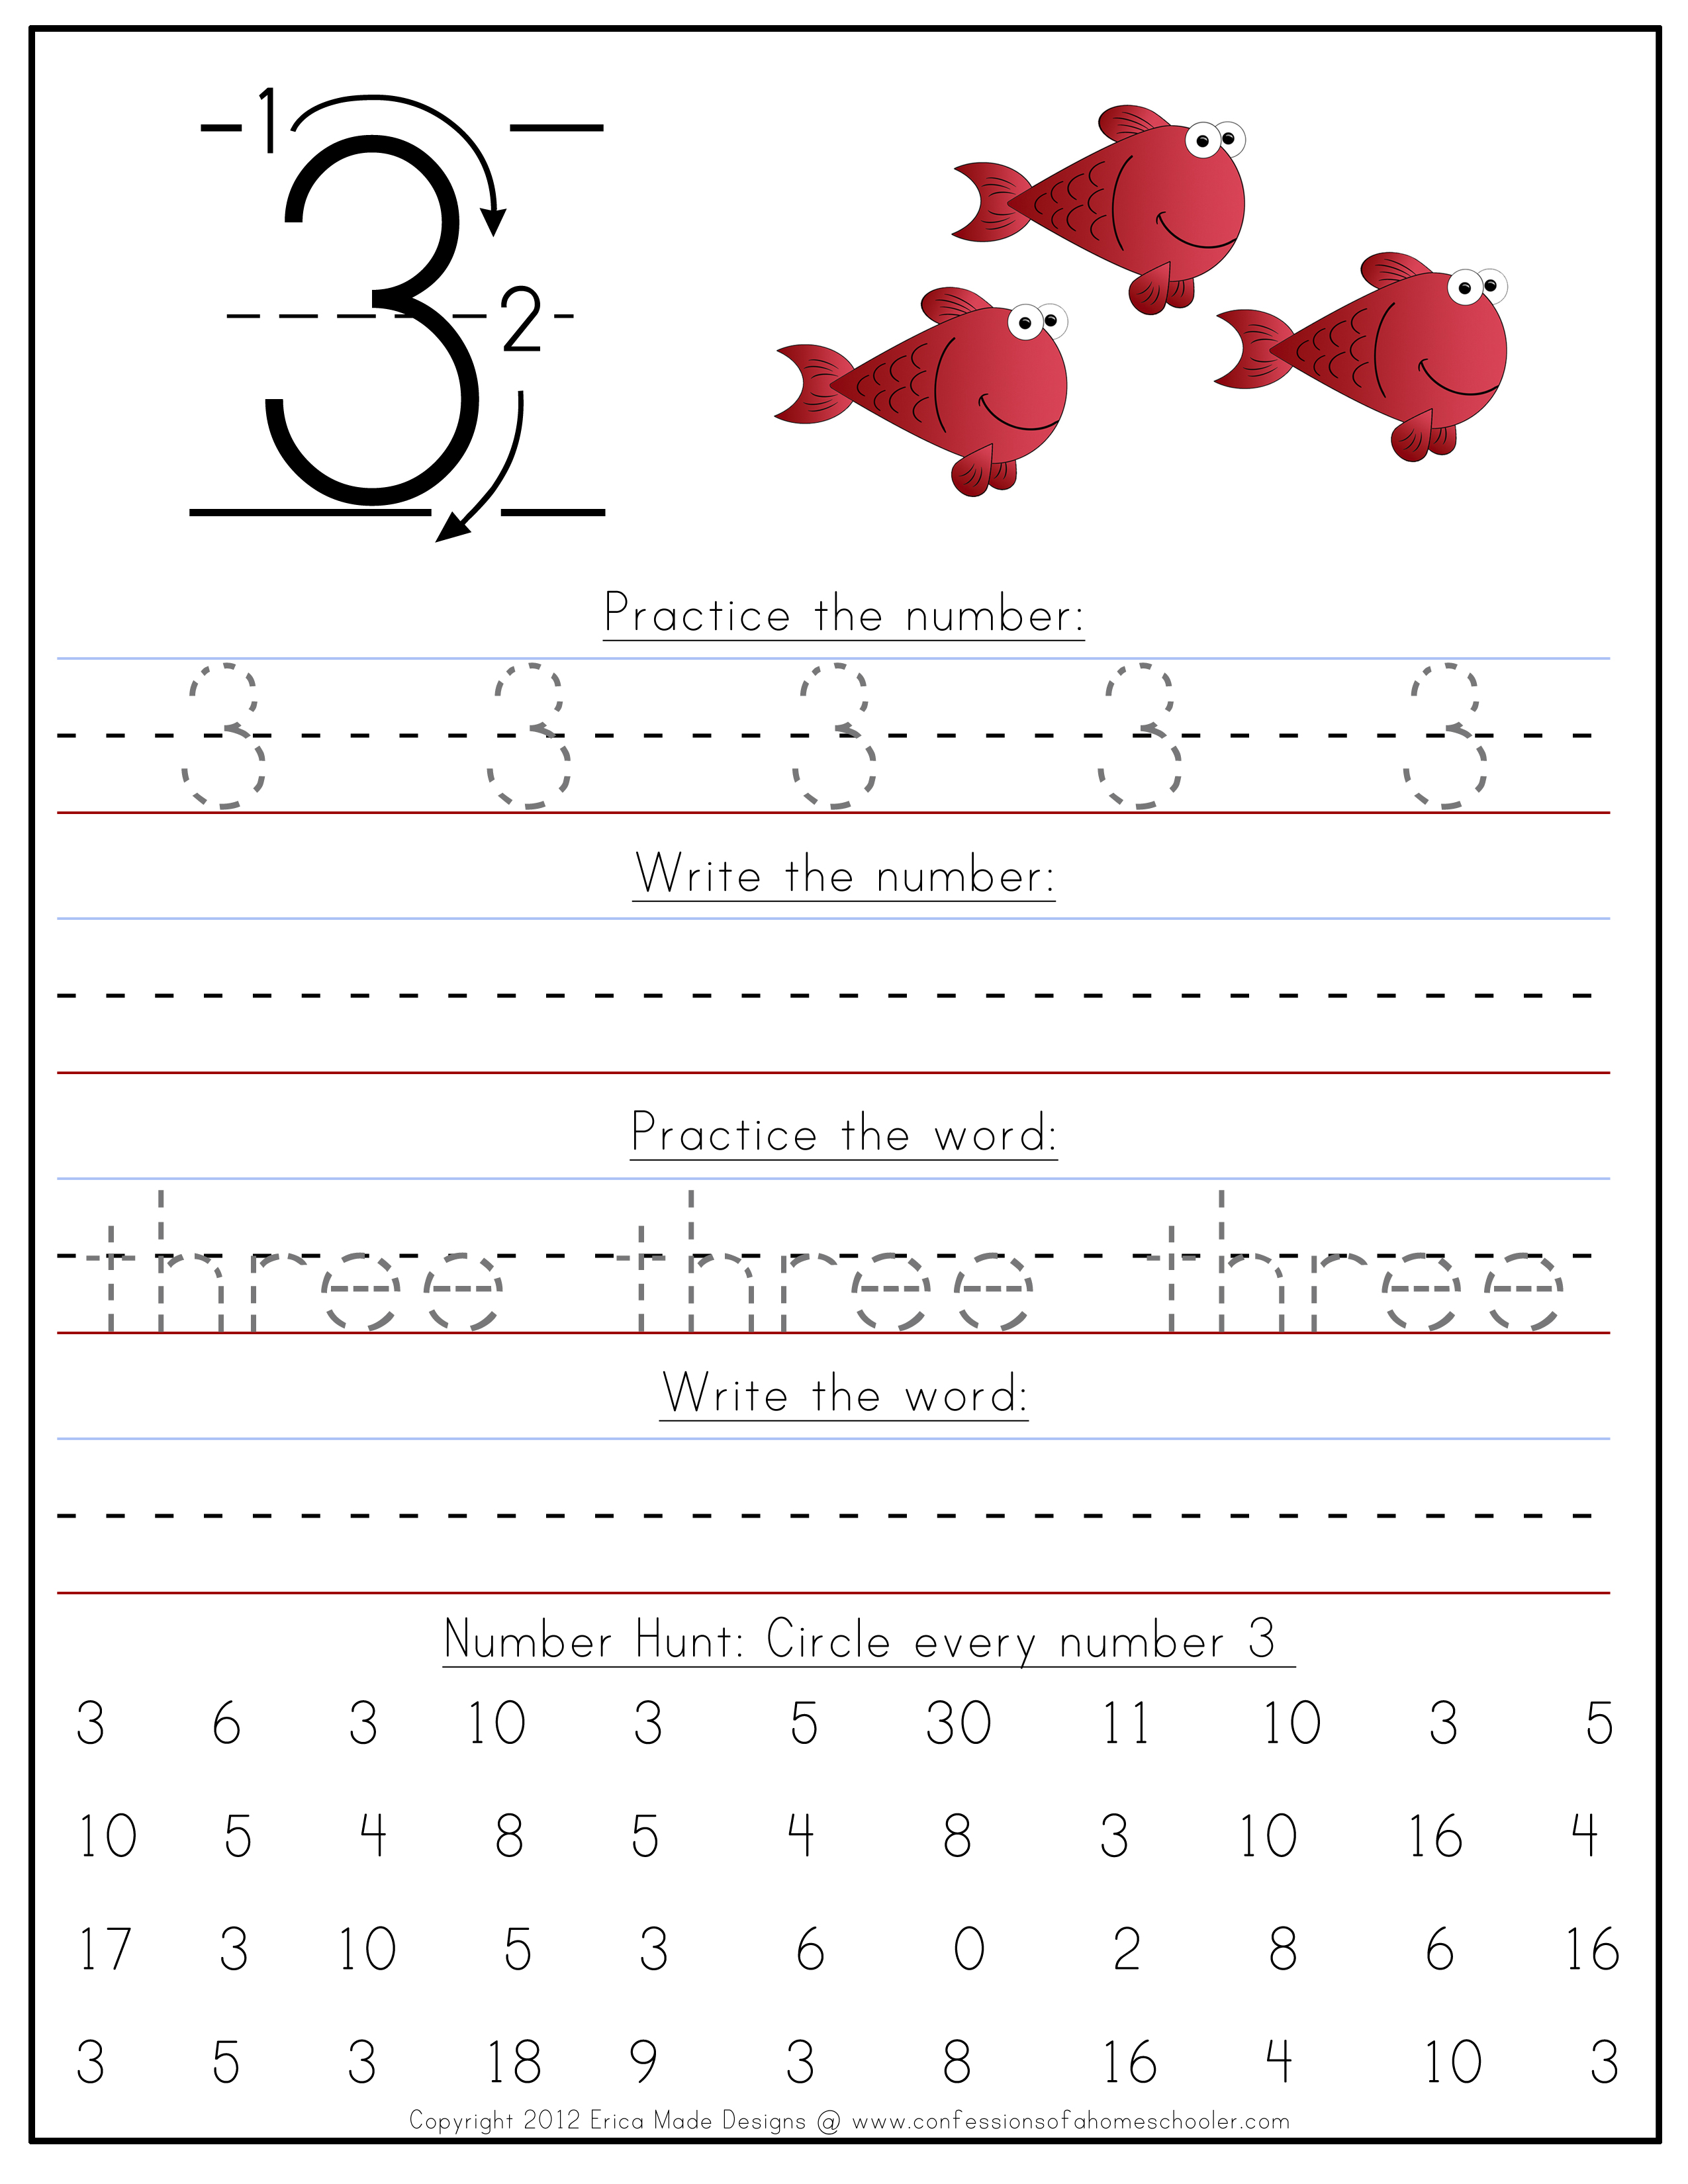 preschool-numbers-worksheet-free-printable-digital-pdf-10-best-number-tracing-printable